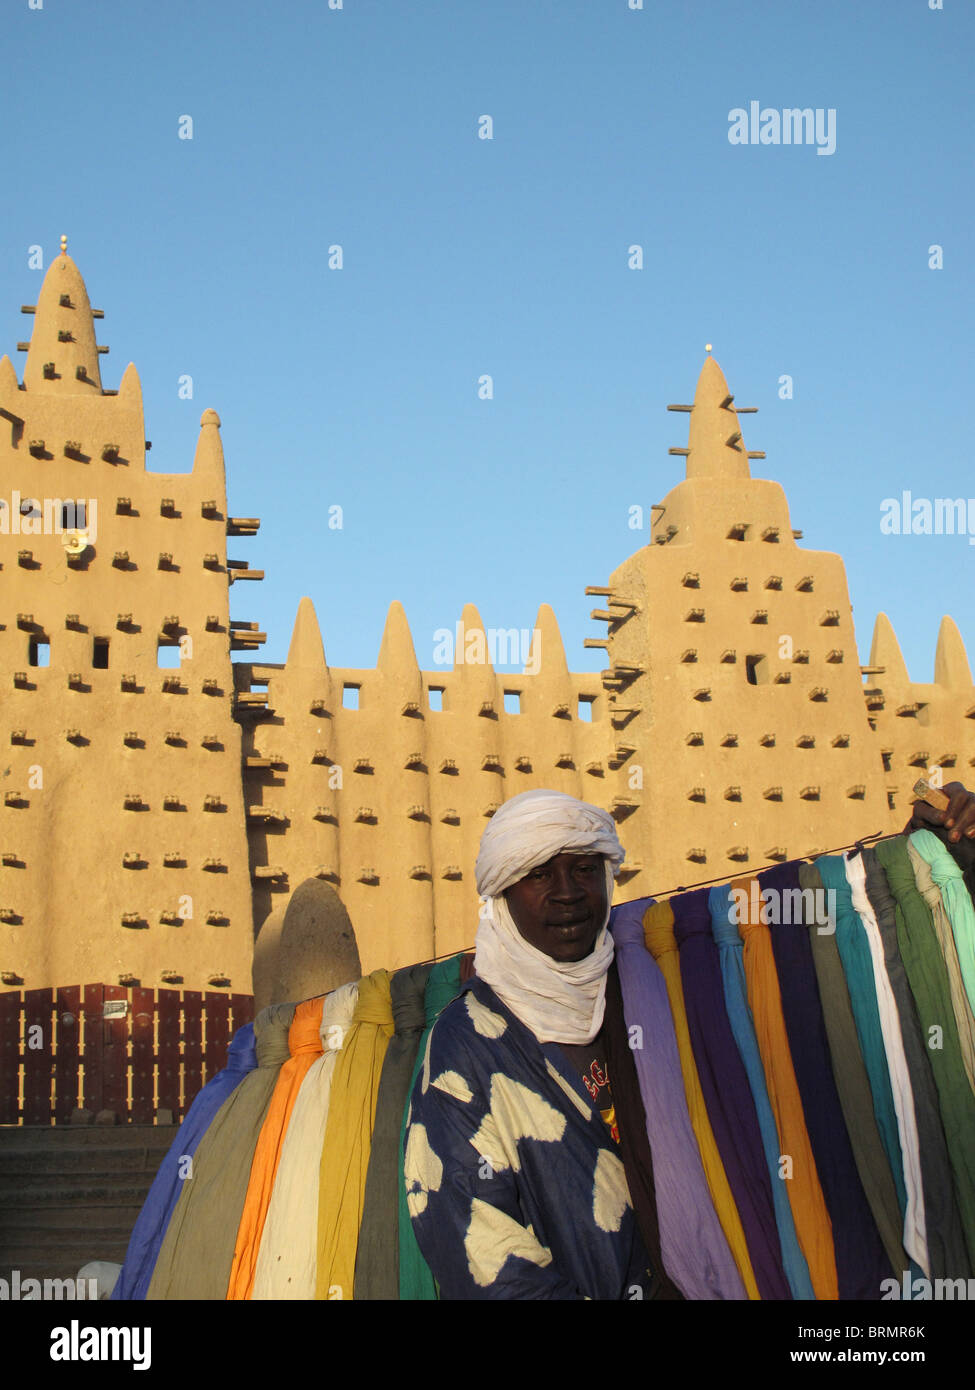 Vente d'un homme en face de turbans colorés Djenné mosquée, la plus grande structure de boue dans le monde, construit en 1907 Banque D'Images